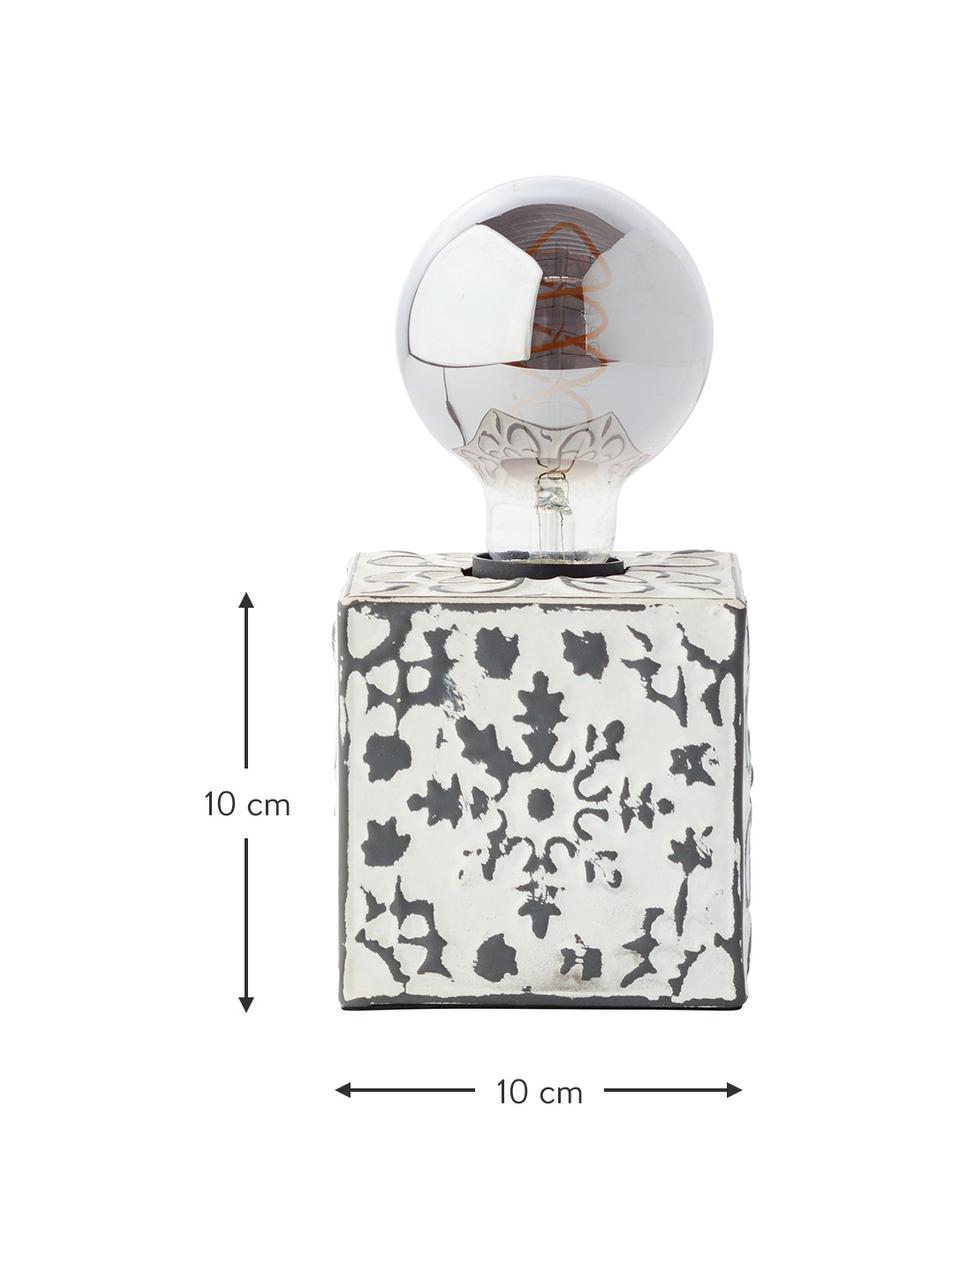 Kleine Tischlampe Vagos mit Antik-Finish, Lampenfuß: Metall, beschichtet, Creme, Schwarz, 10 x 10 cm